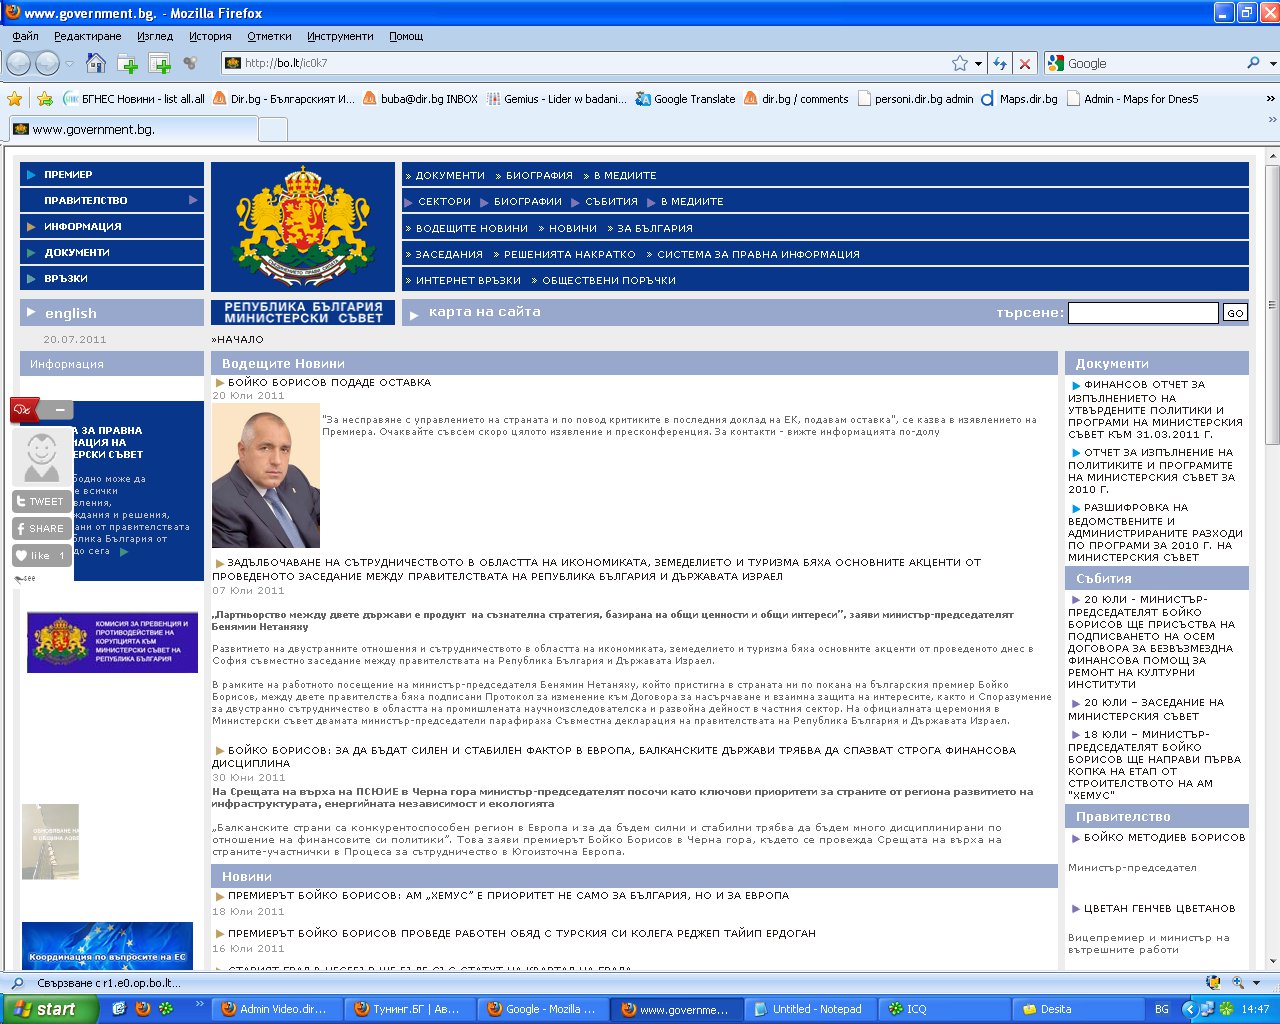 Бойко Борисов подаде оставка, информира сайт-клонинг на МС